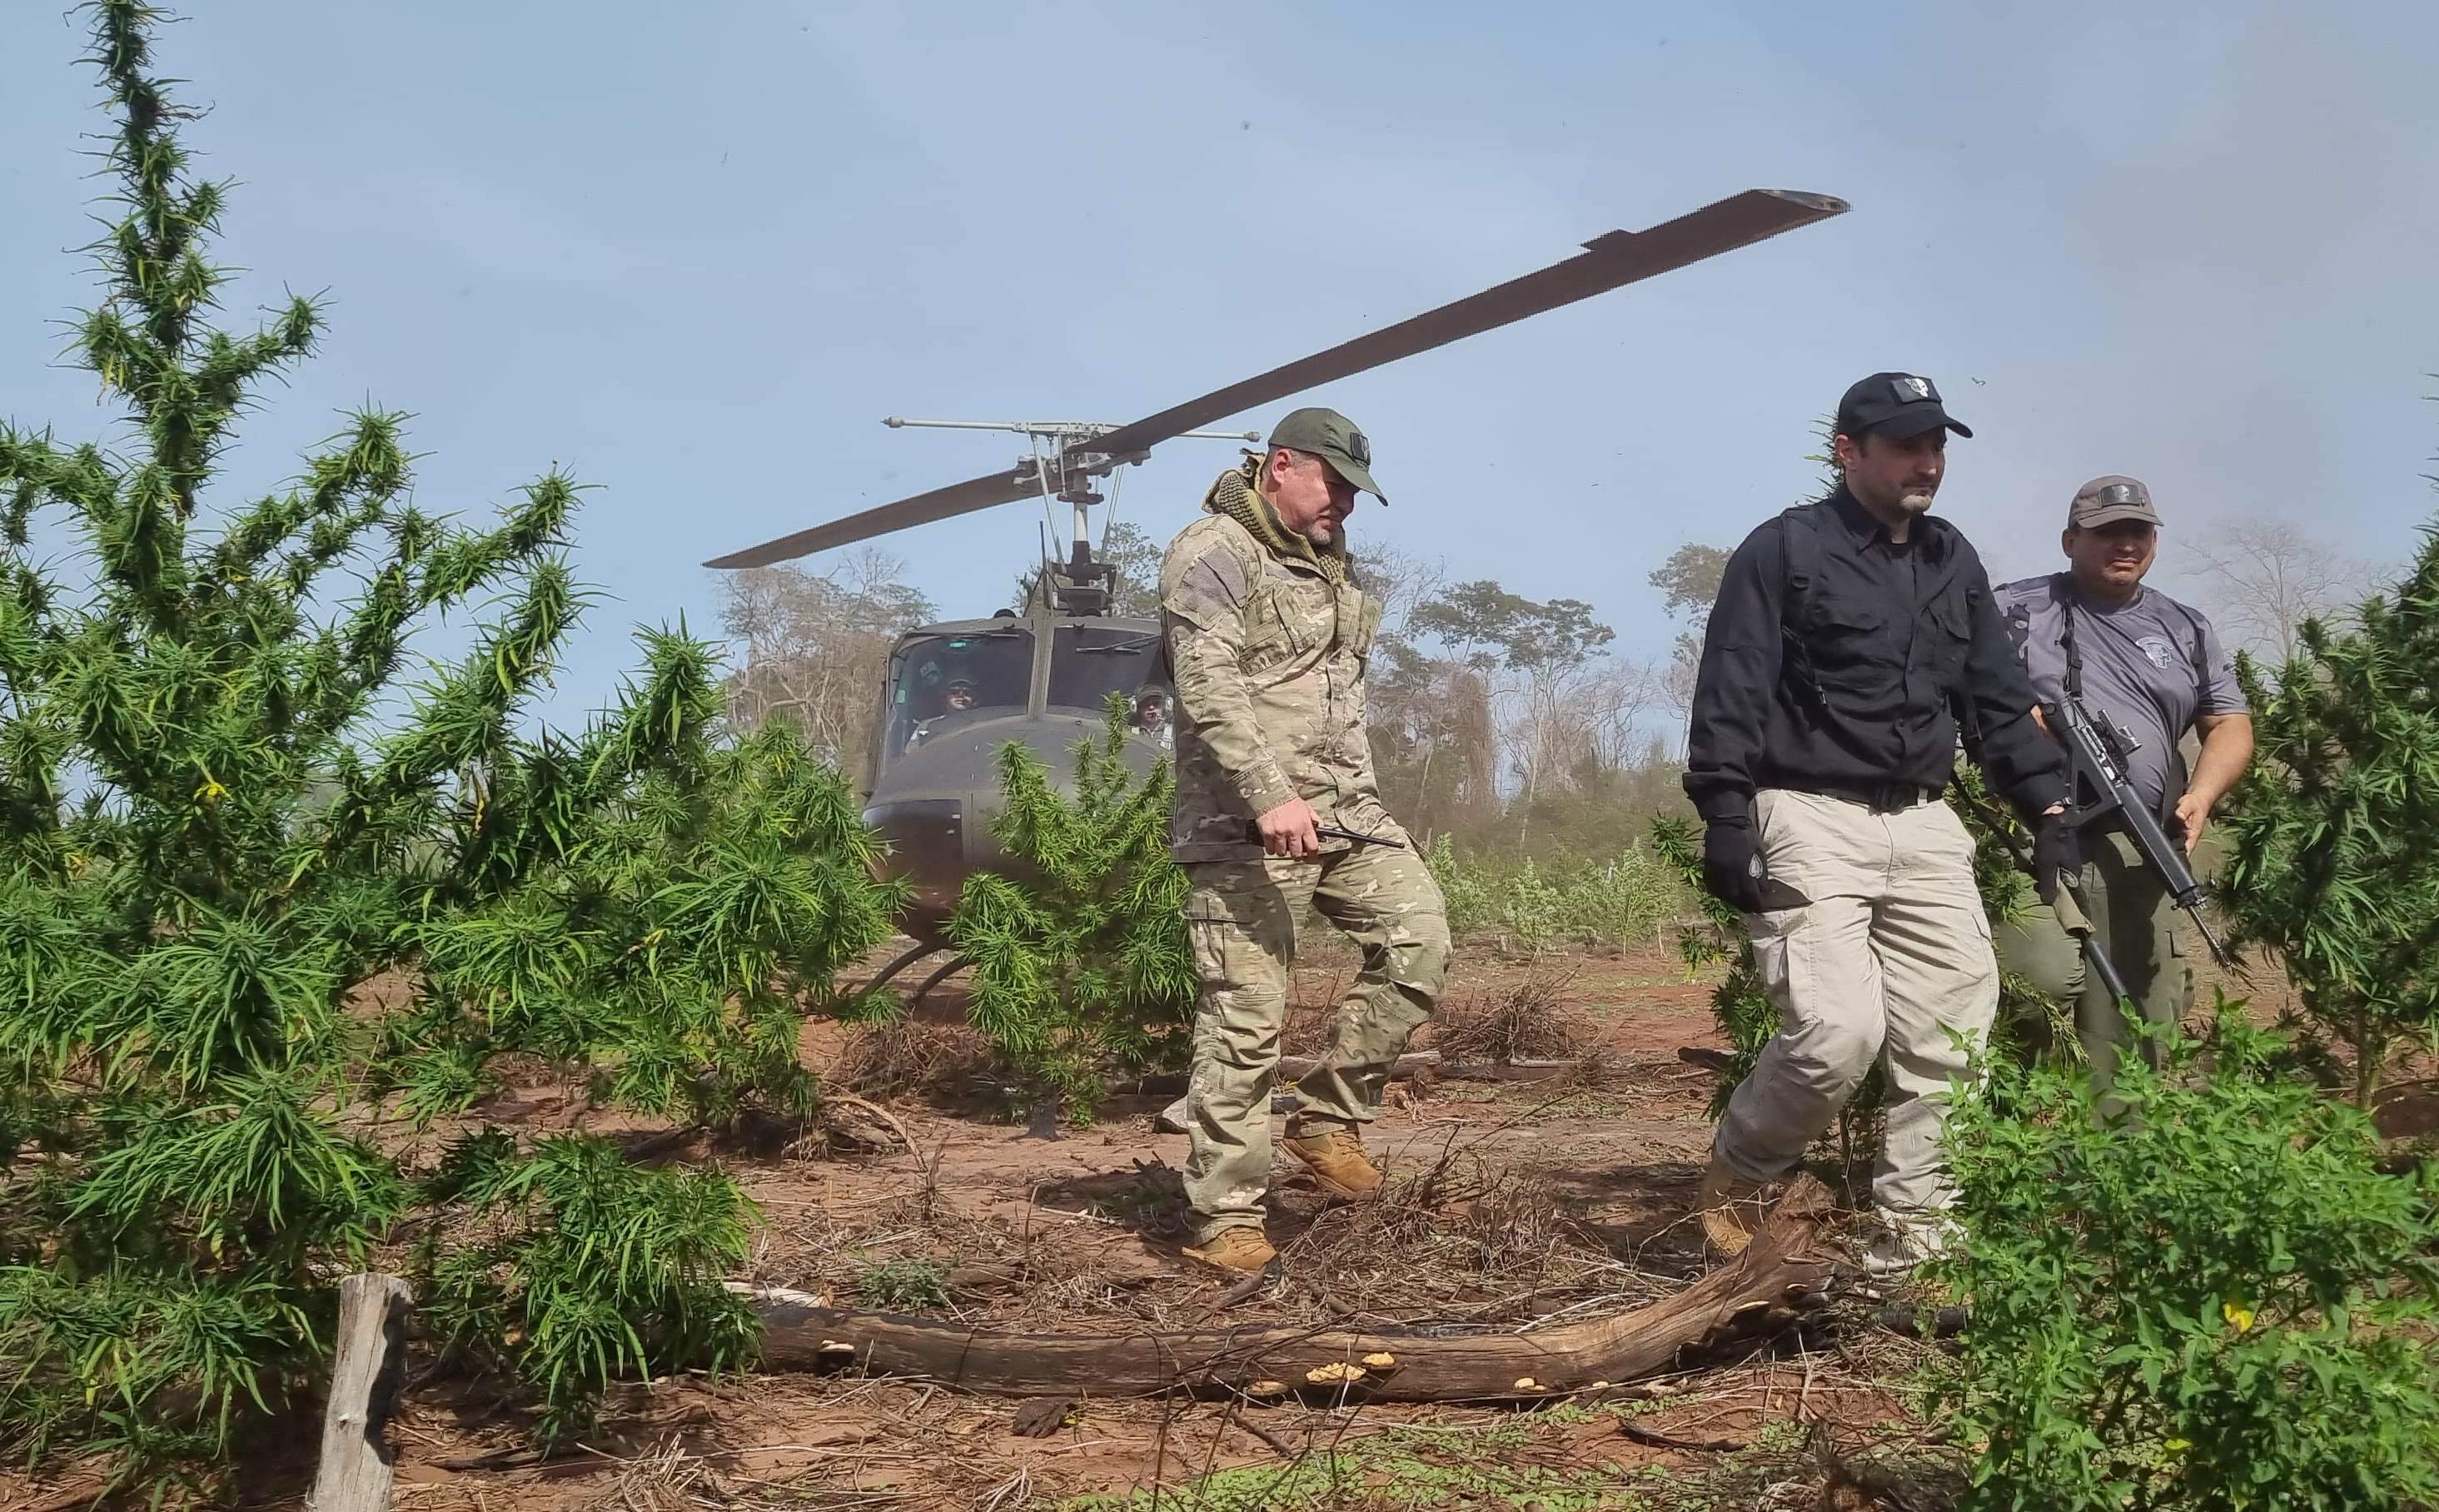 De helicóptero, ministro chega a áreas de combate a lavouras de maconha